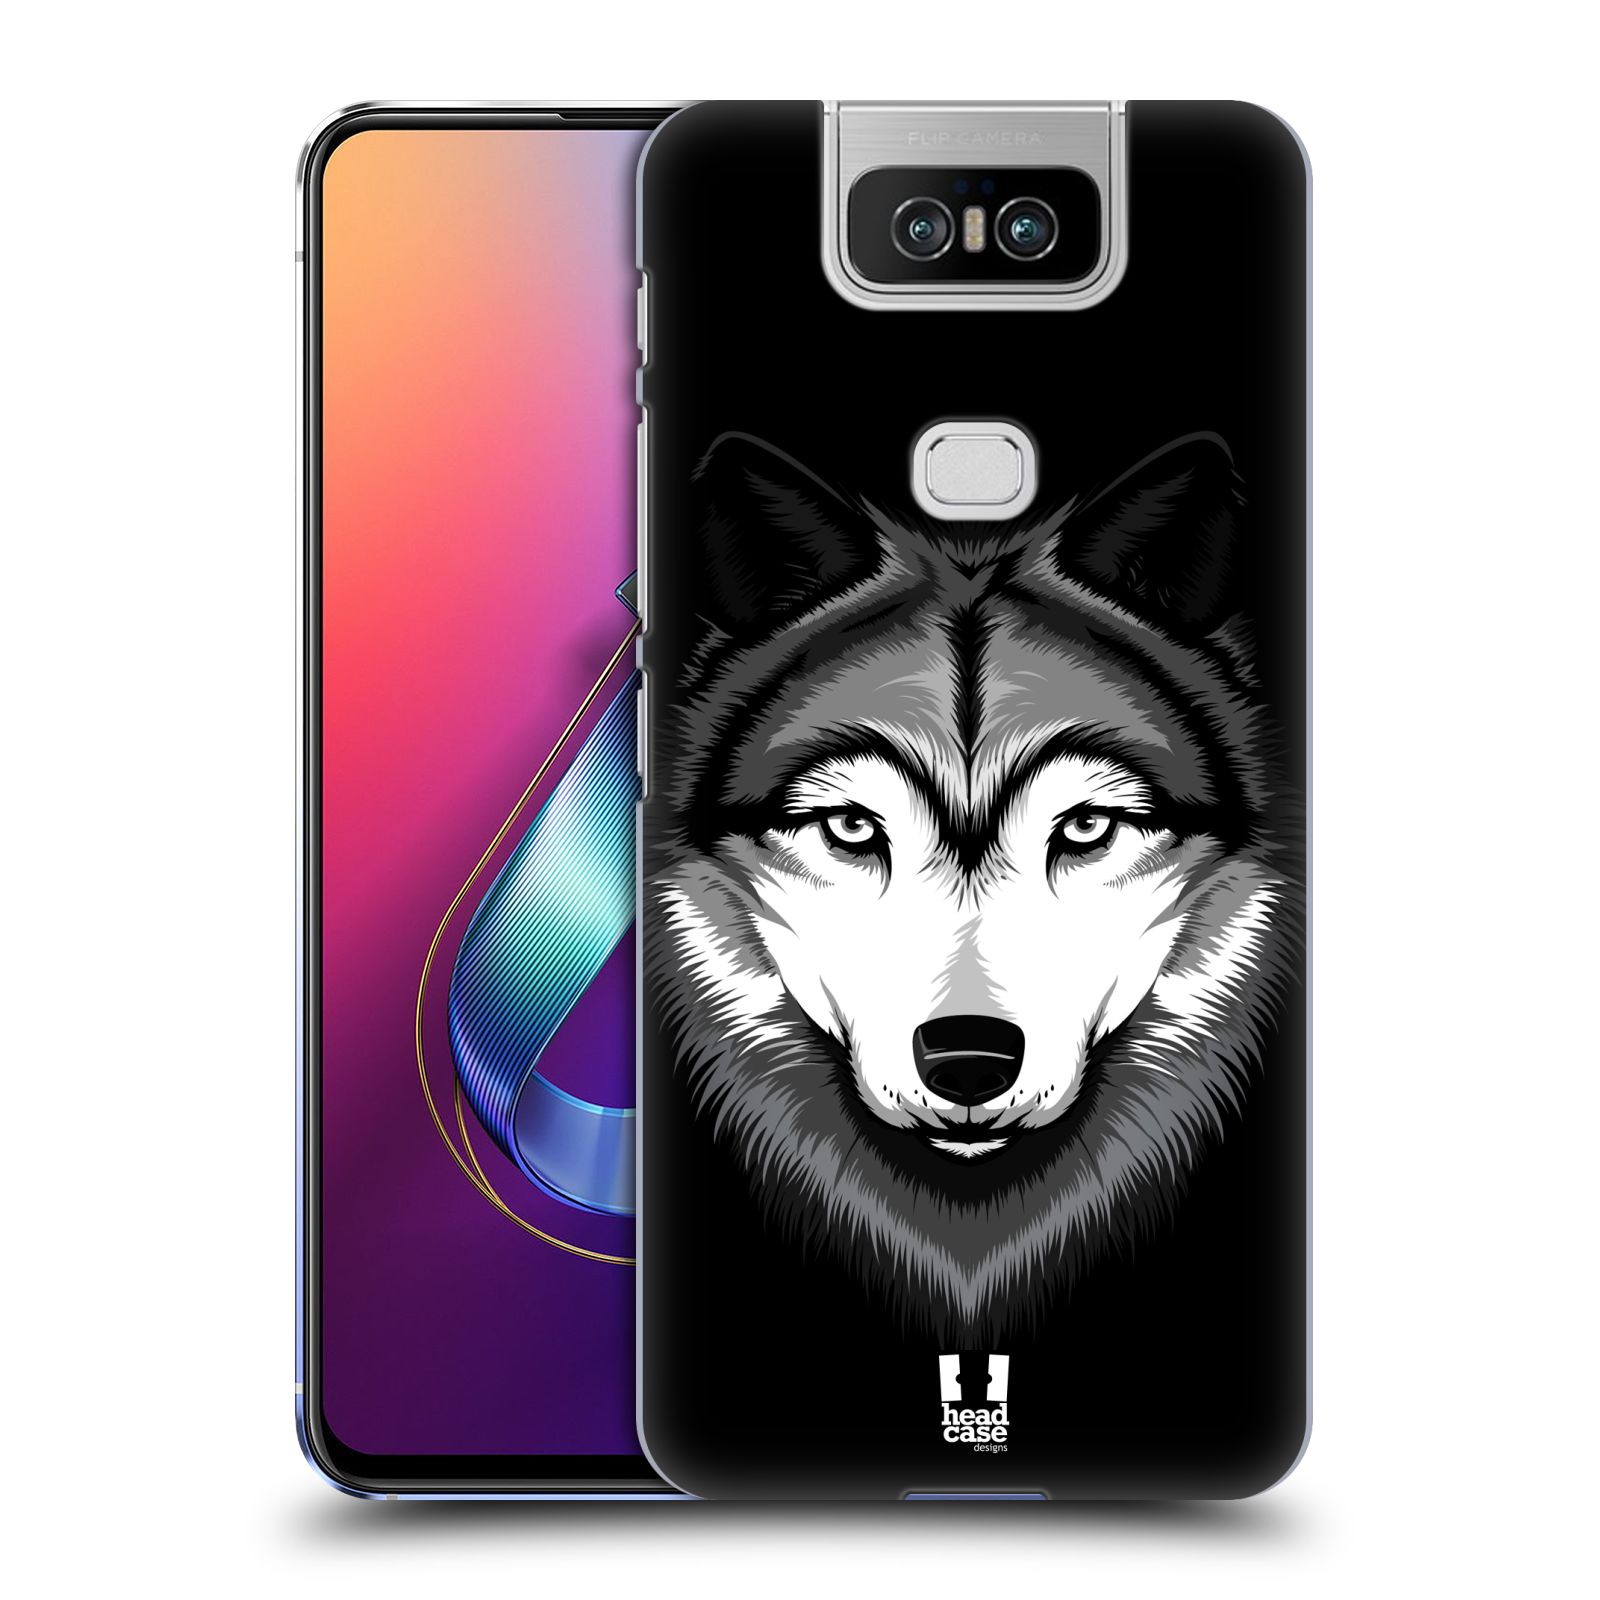 Pouzdro na mobil Asus Zenfone 6 ZS630KL - HEAD CASE - vzor Zvíře kreslená tvář 2 vlk